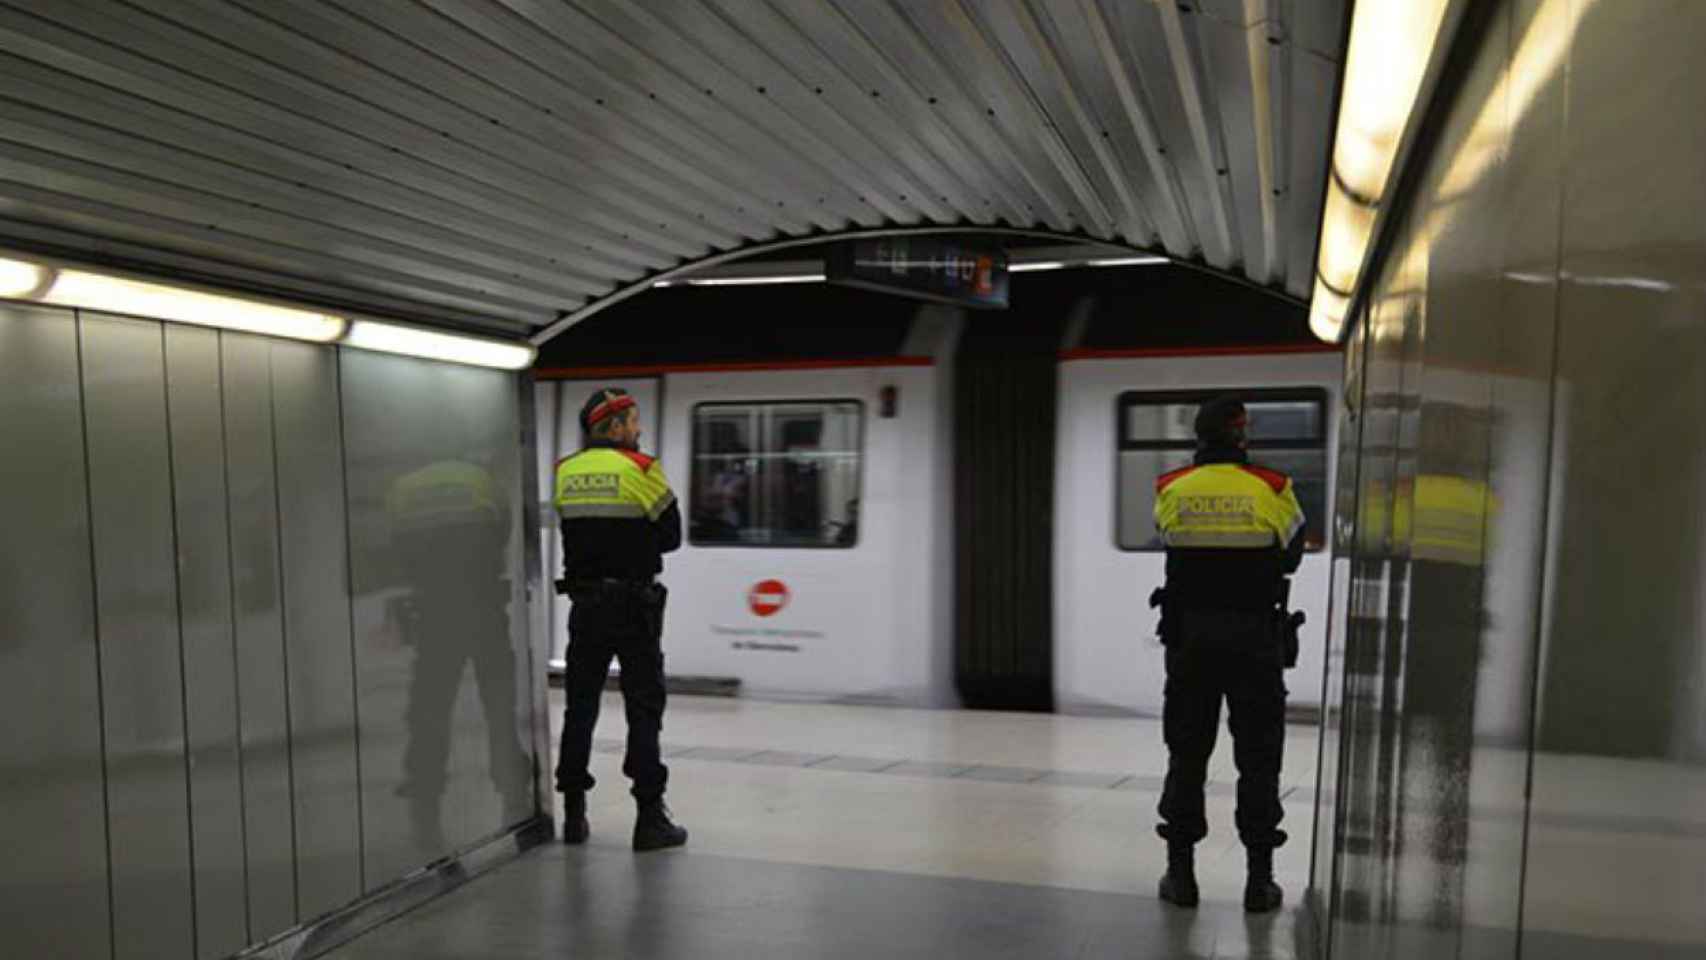 Los Mossos han localizado a la mujer que desapareció en el Metro / @mossos